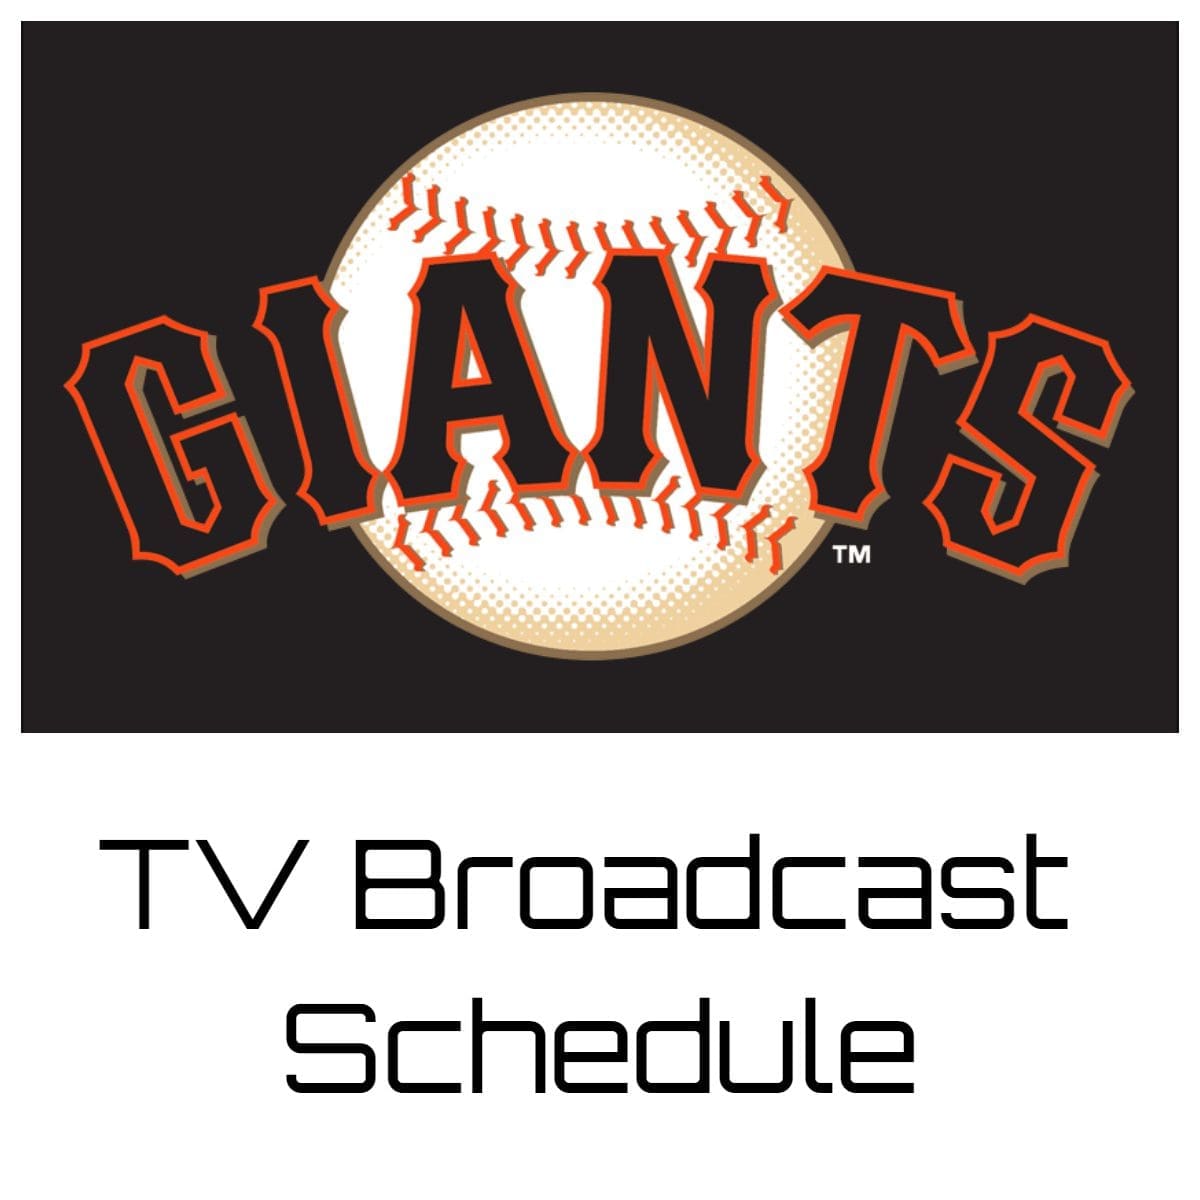 San Francisco Giants TV Broadcast Schedule